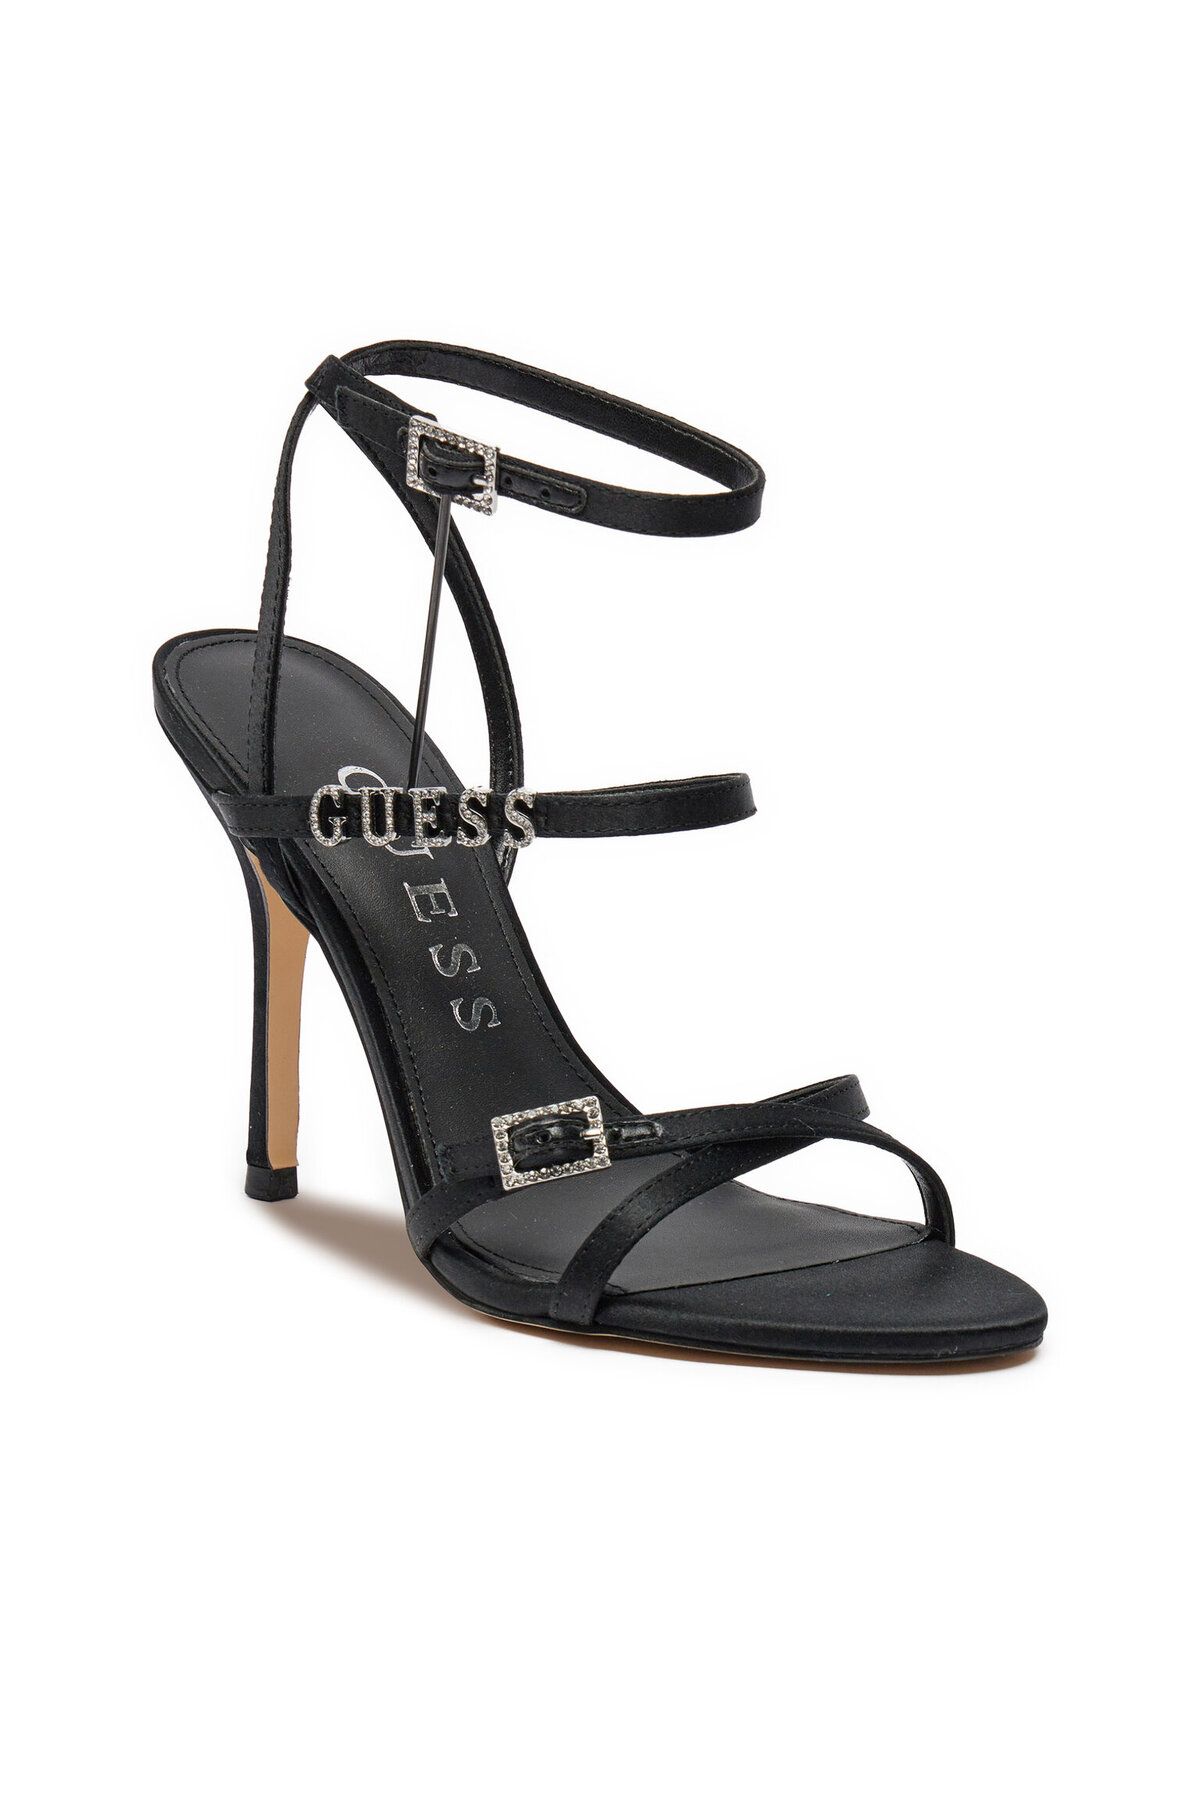 Guess Kadın Logo Detaylı Metal Tokalı Ayarlanabilir Siyah Klasik Topuklu Ayakkabı FLJEDI SAT03-BLACK